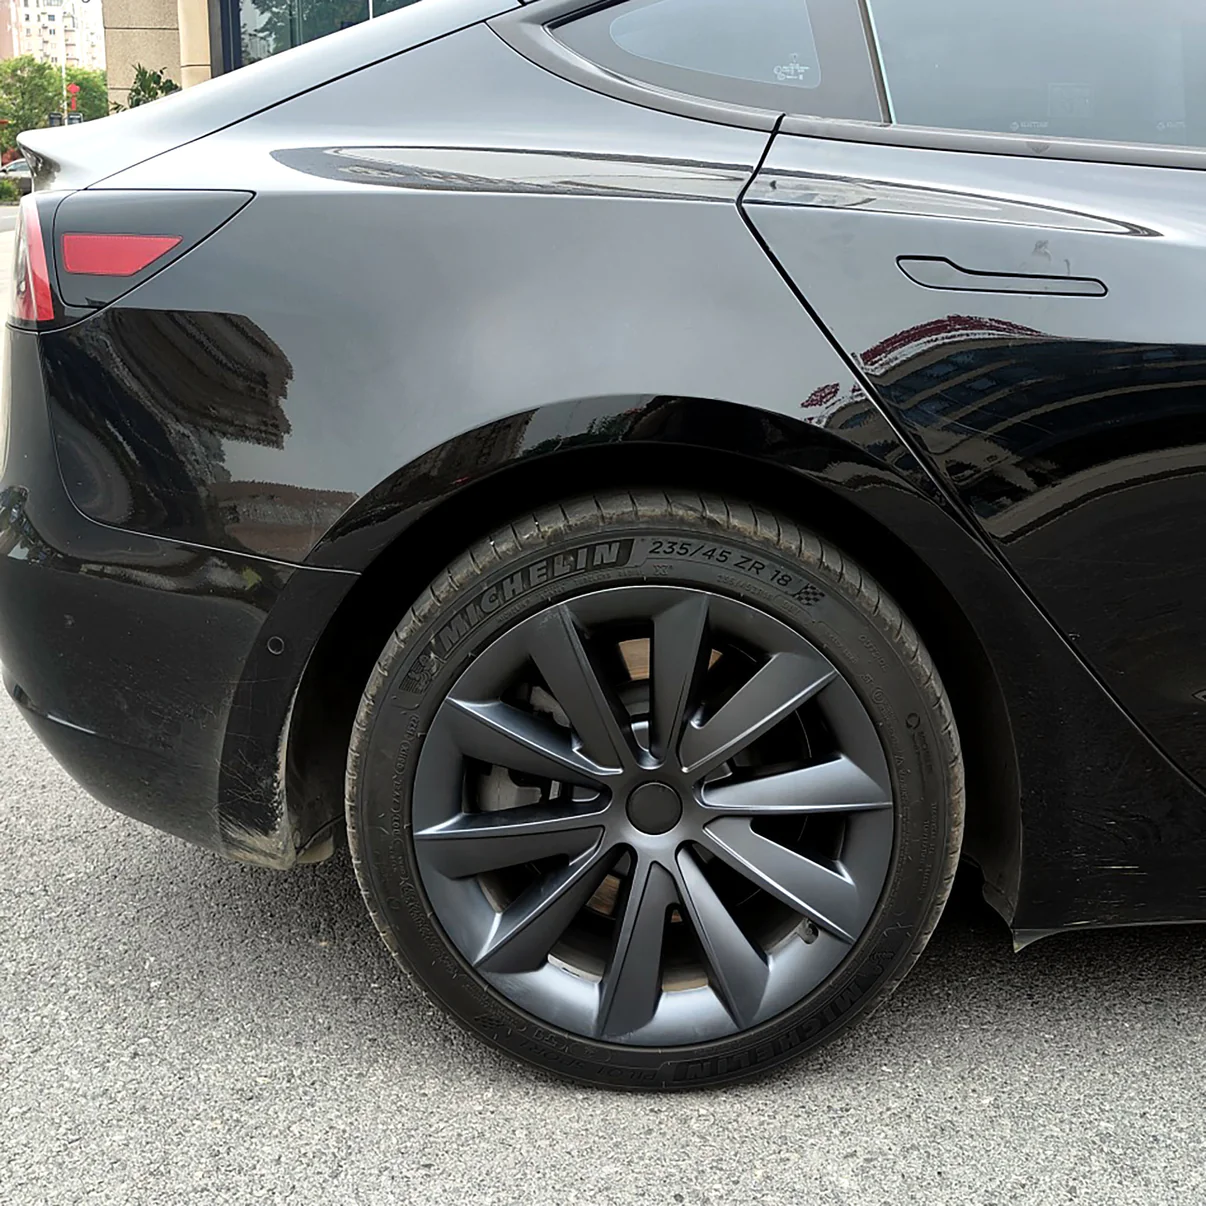 Tesla Model 3 : Enjoliveur de roue Aero, jeu d'enjoliveurs - aspect carbone  - Plugear